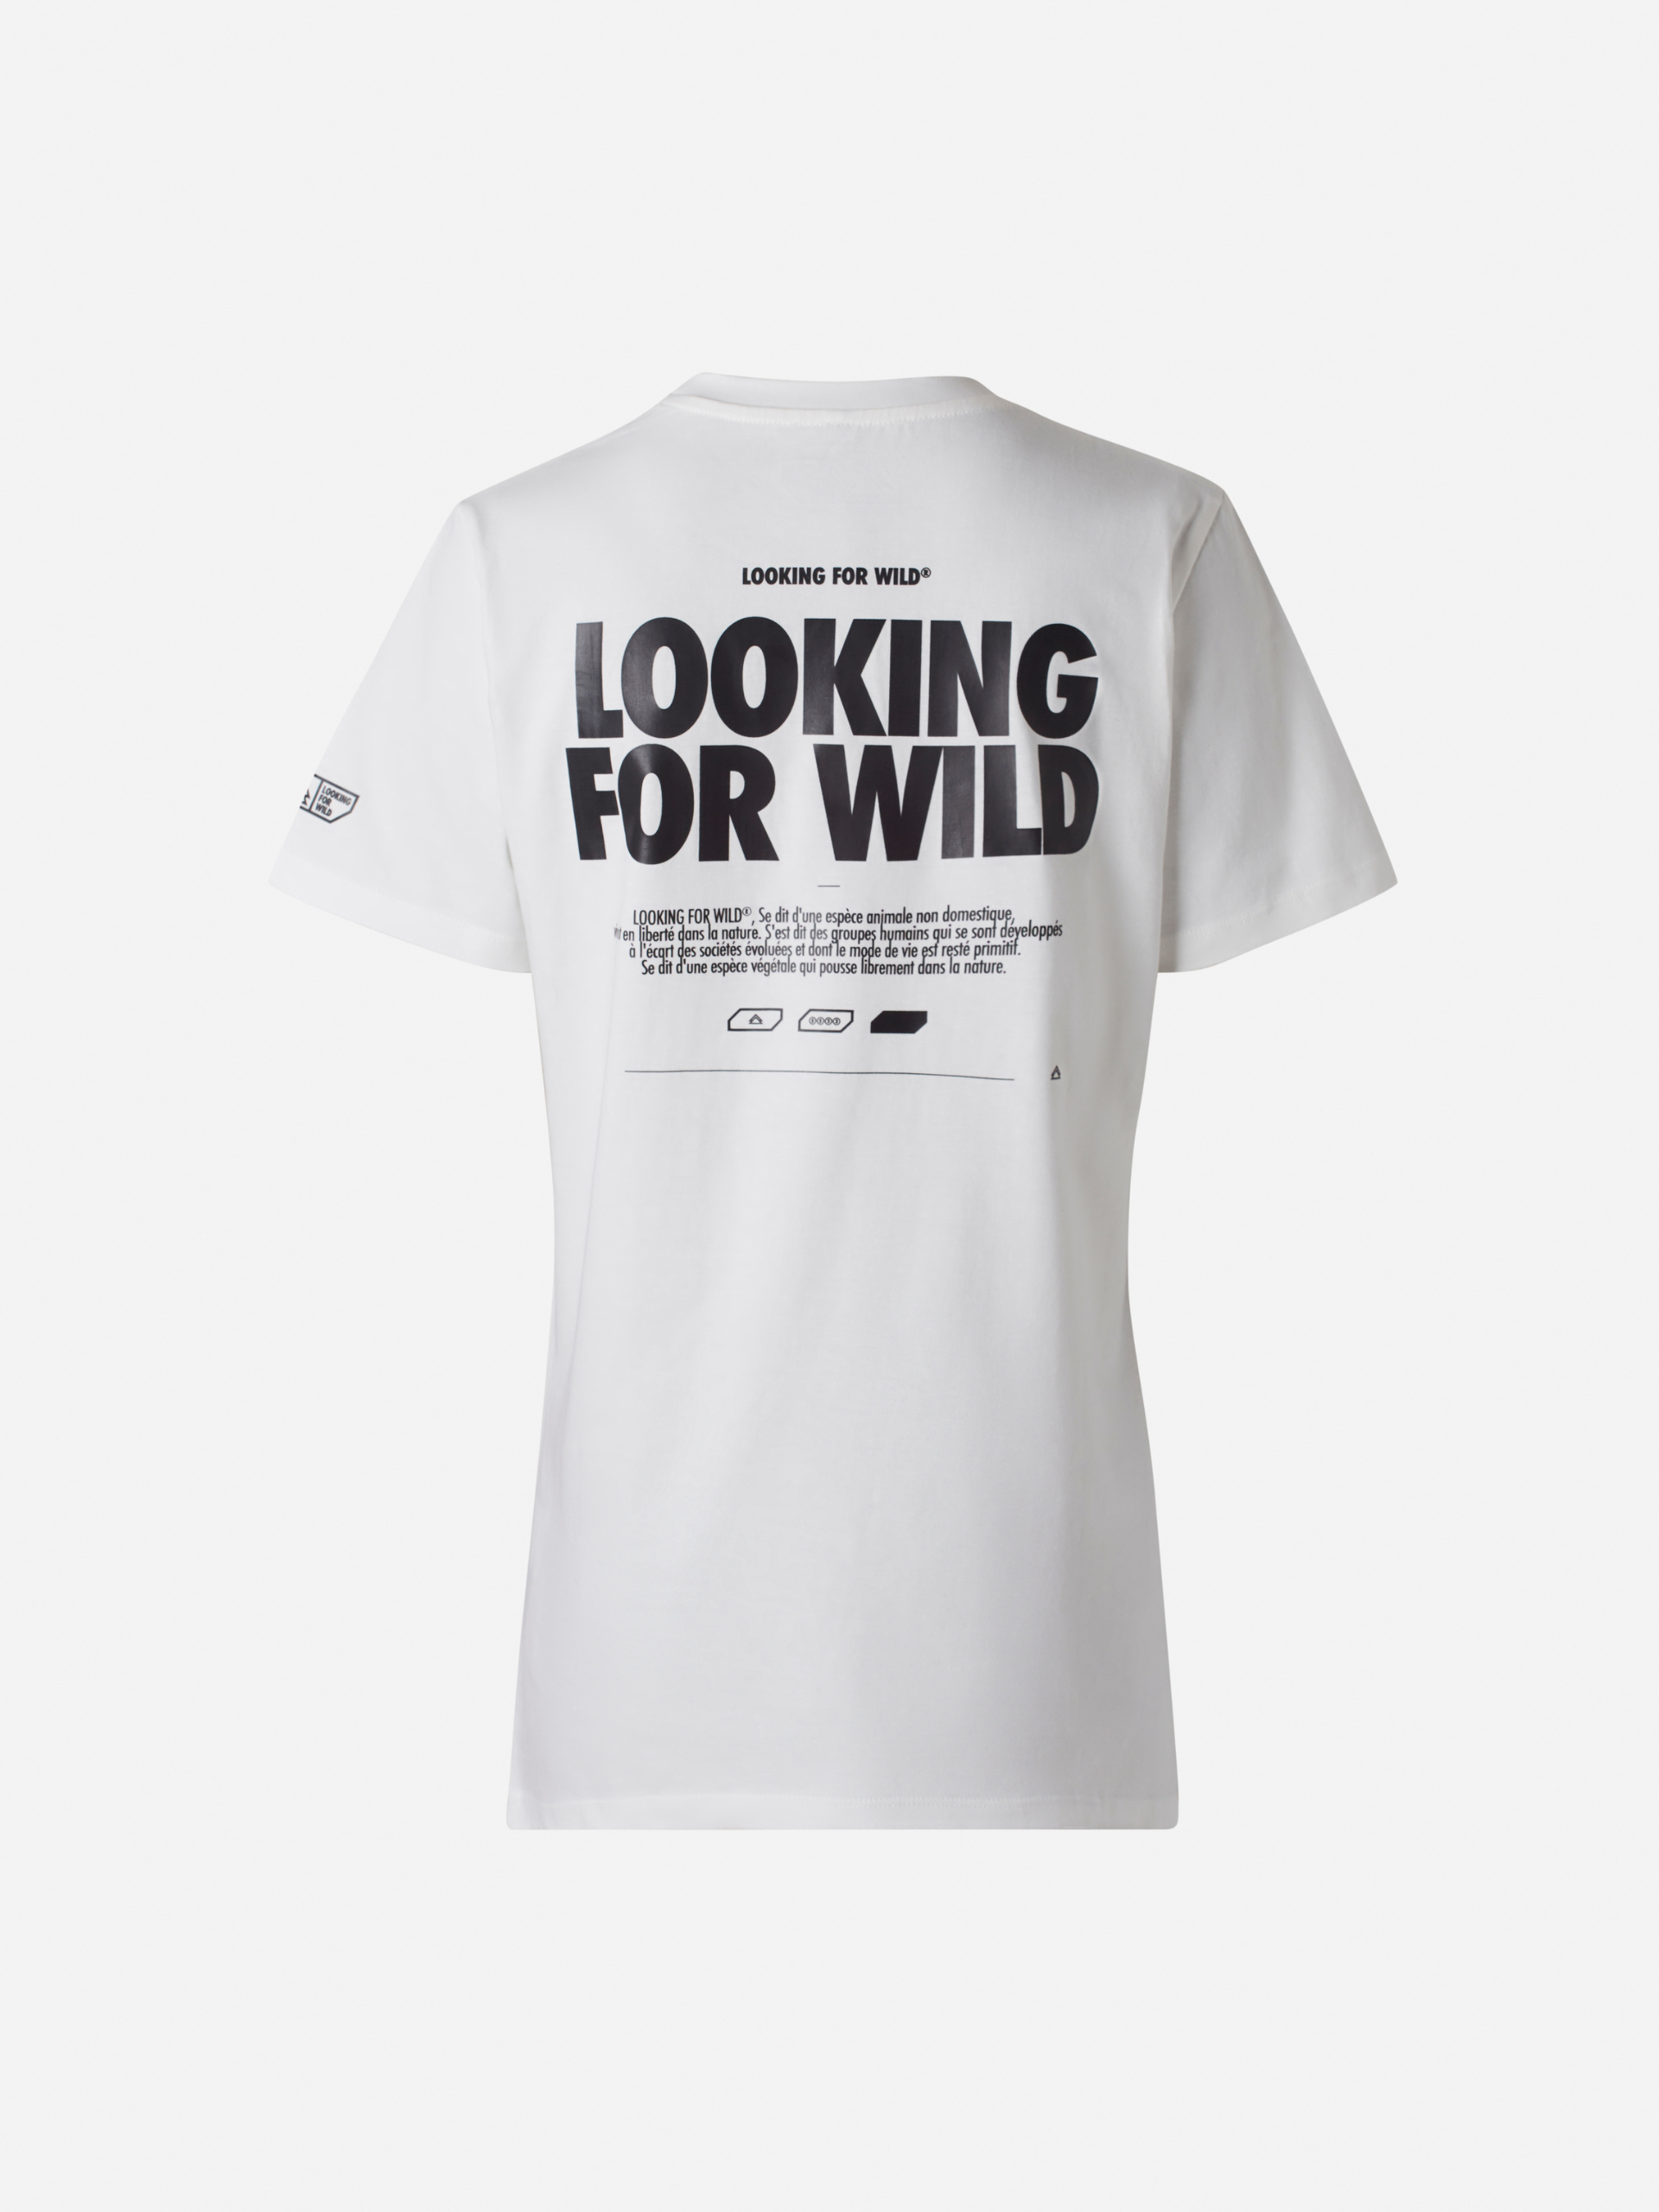 Olwen Optic White unisex t-shirt